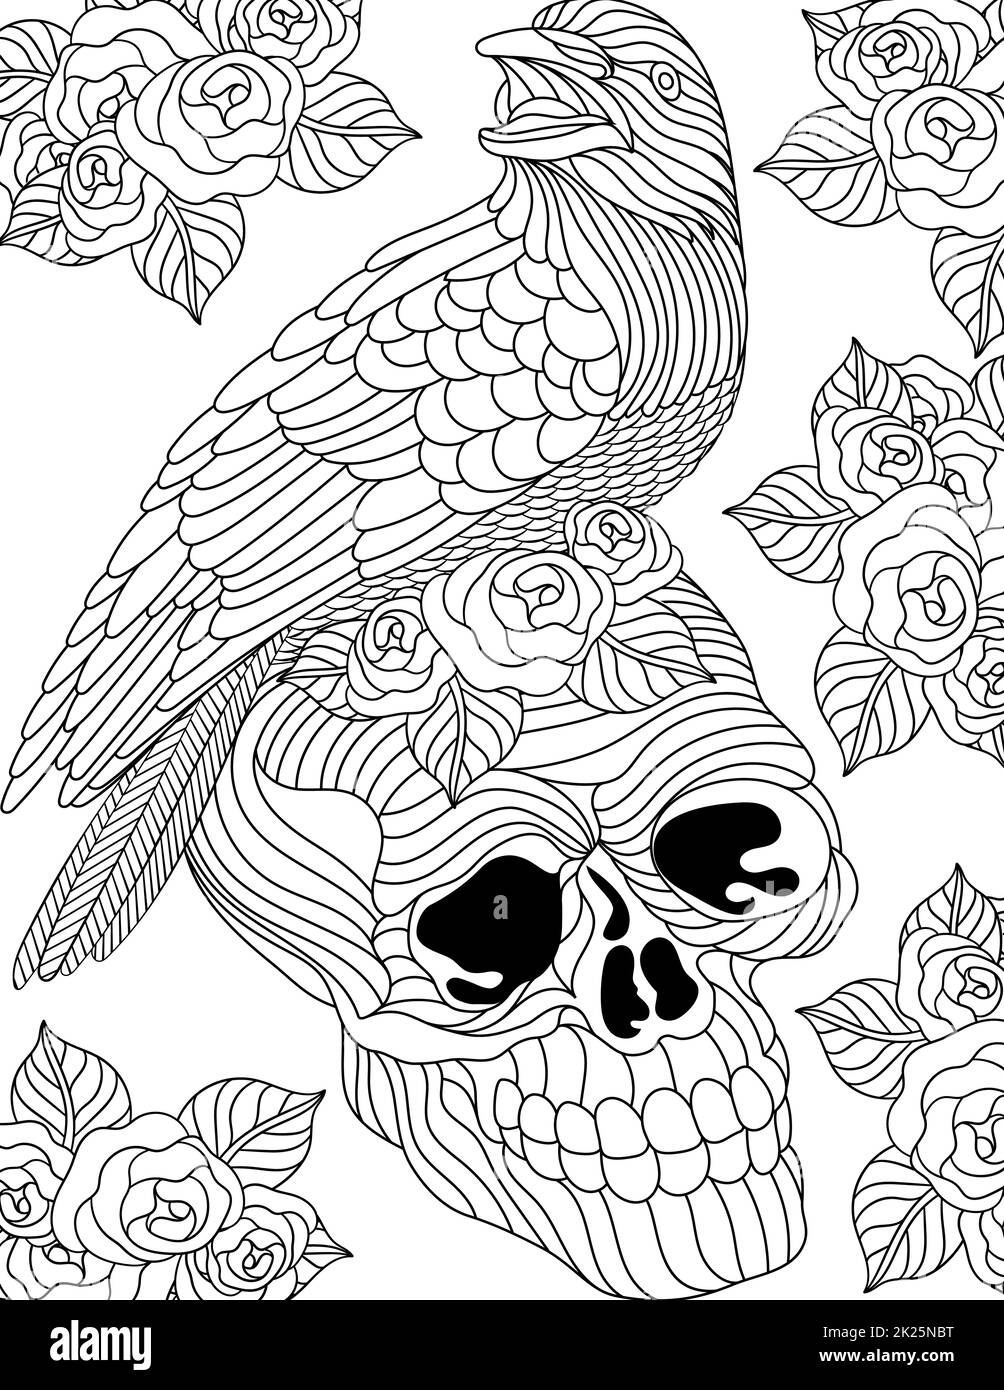 Raven Line dessin debout sur crâne Surrenié avec fleurs Tattoo coloriage Book Banque D'Images